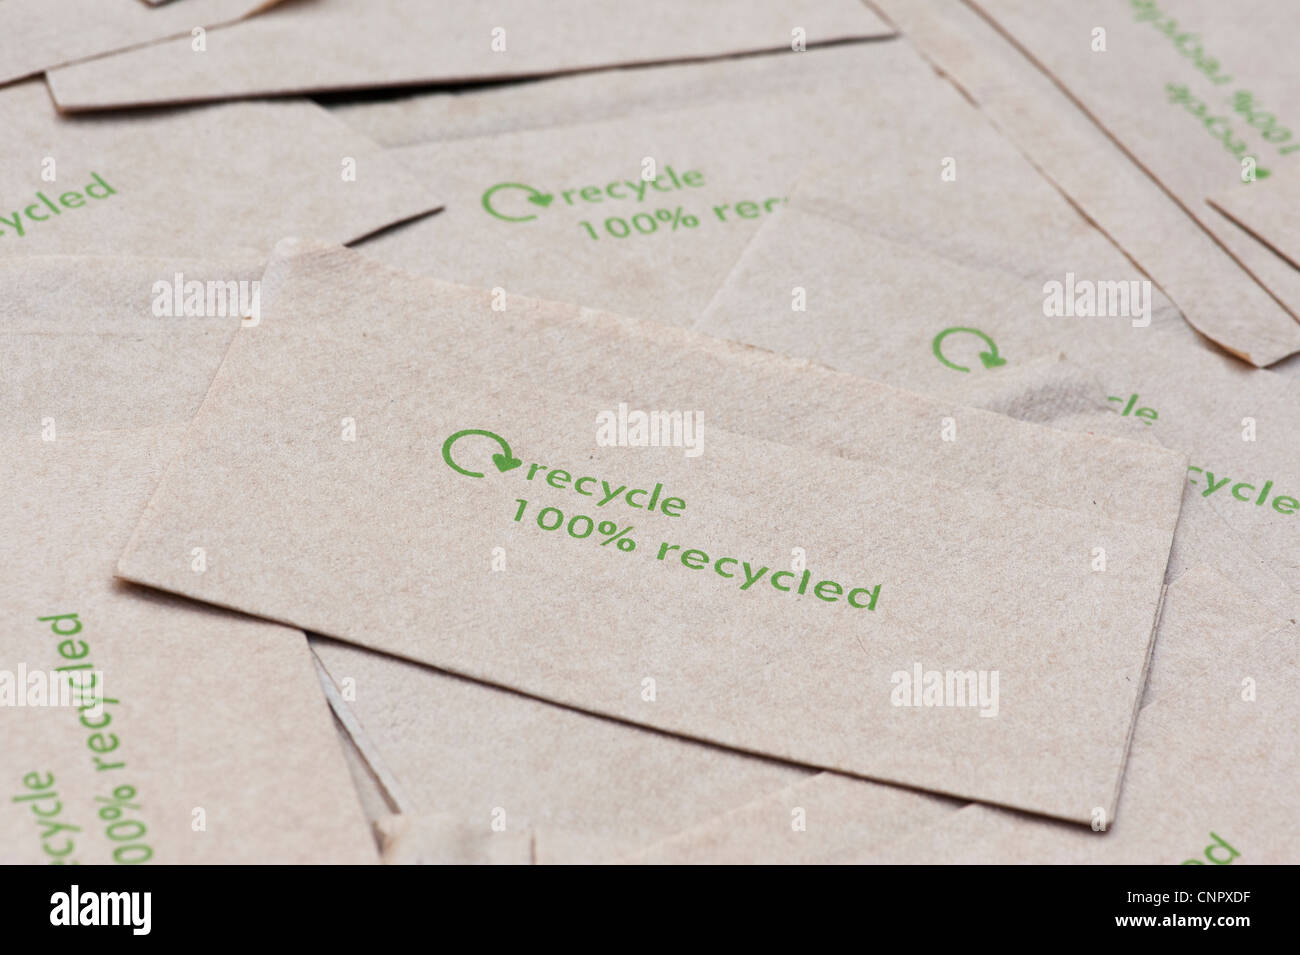 Reciclar papel reciclado 100% / mensaje impreso sobre servilletas de papel  Fotografía de stock - Alamy